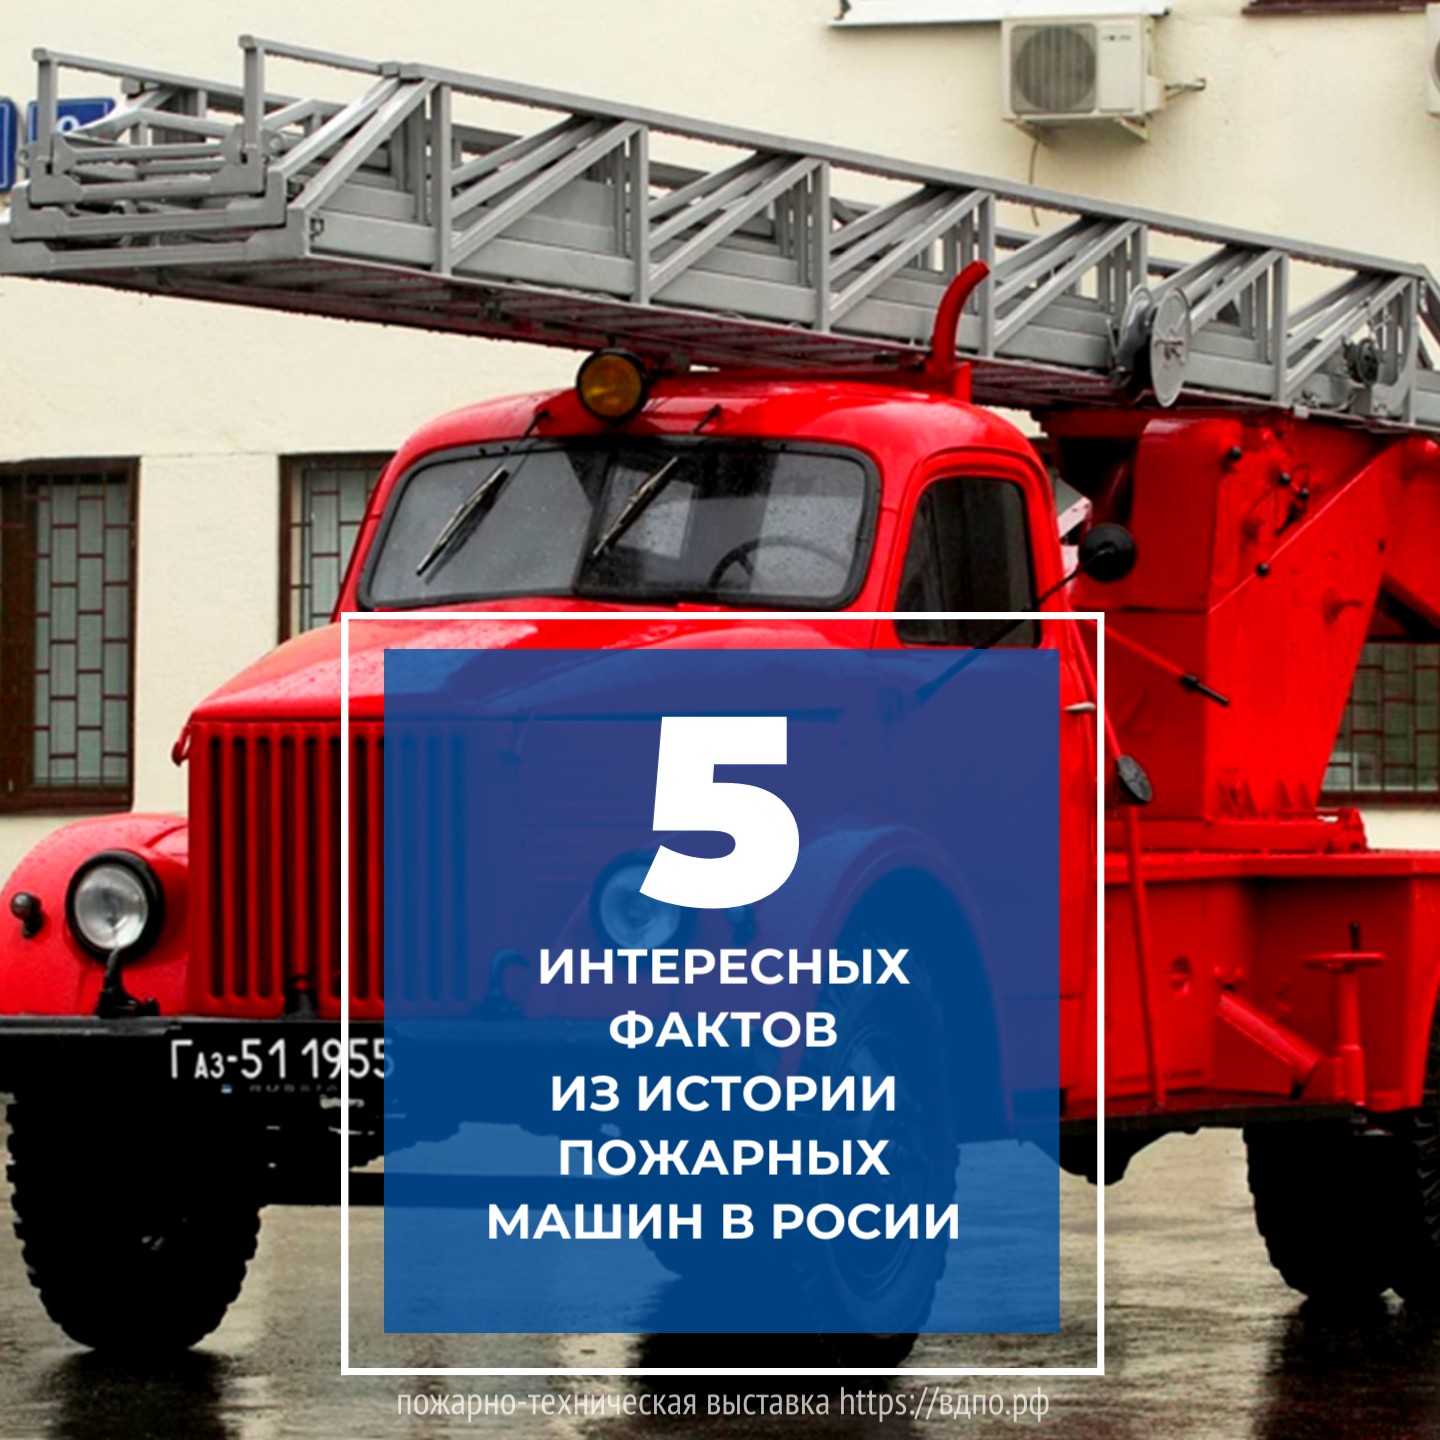 5 интересных фактов из истории российских пожарных машин  Факт №1 
 Первый пожарный автомобиль в нашей стране был собран в 1904 года в Санкт-Петербурге......